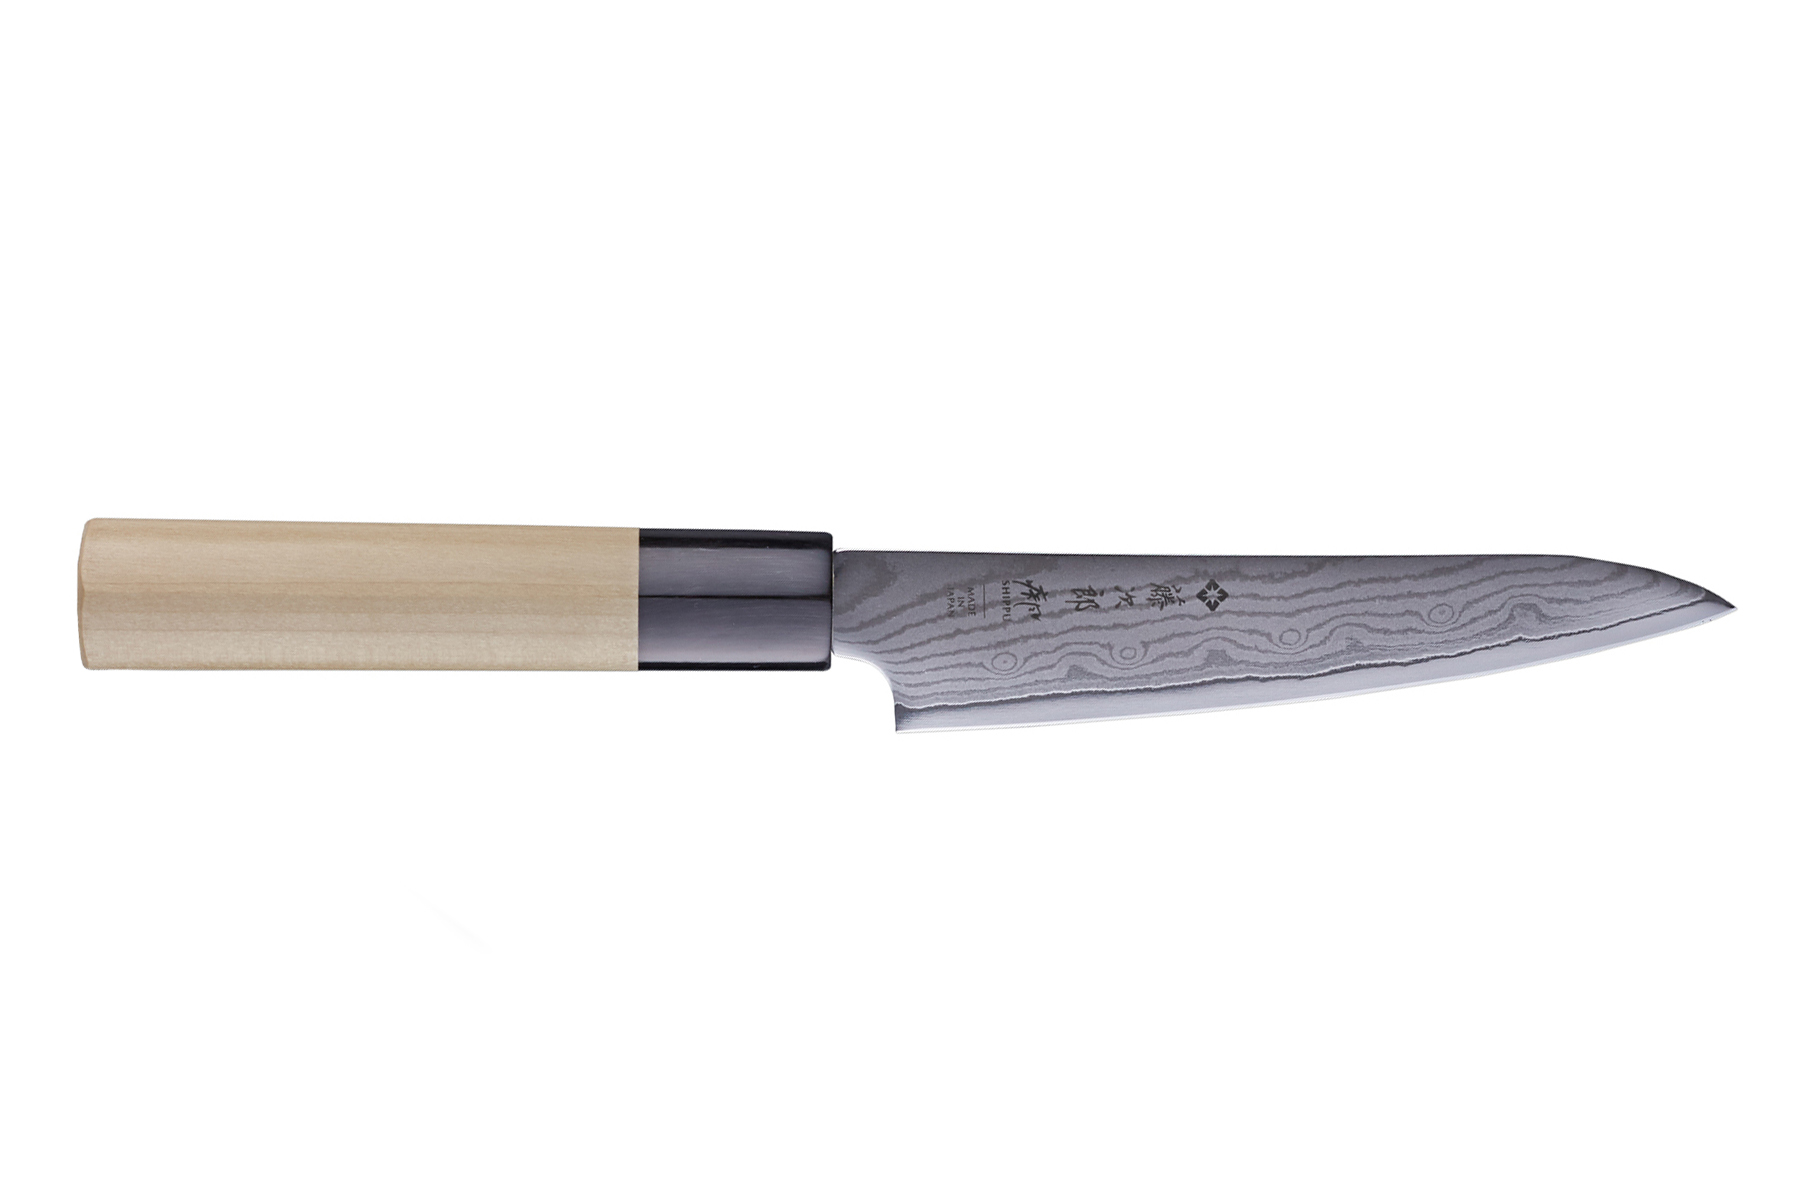 Couteau japonais Office 8 cm - Pro couteaux